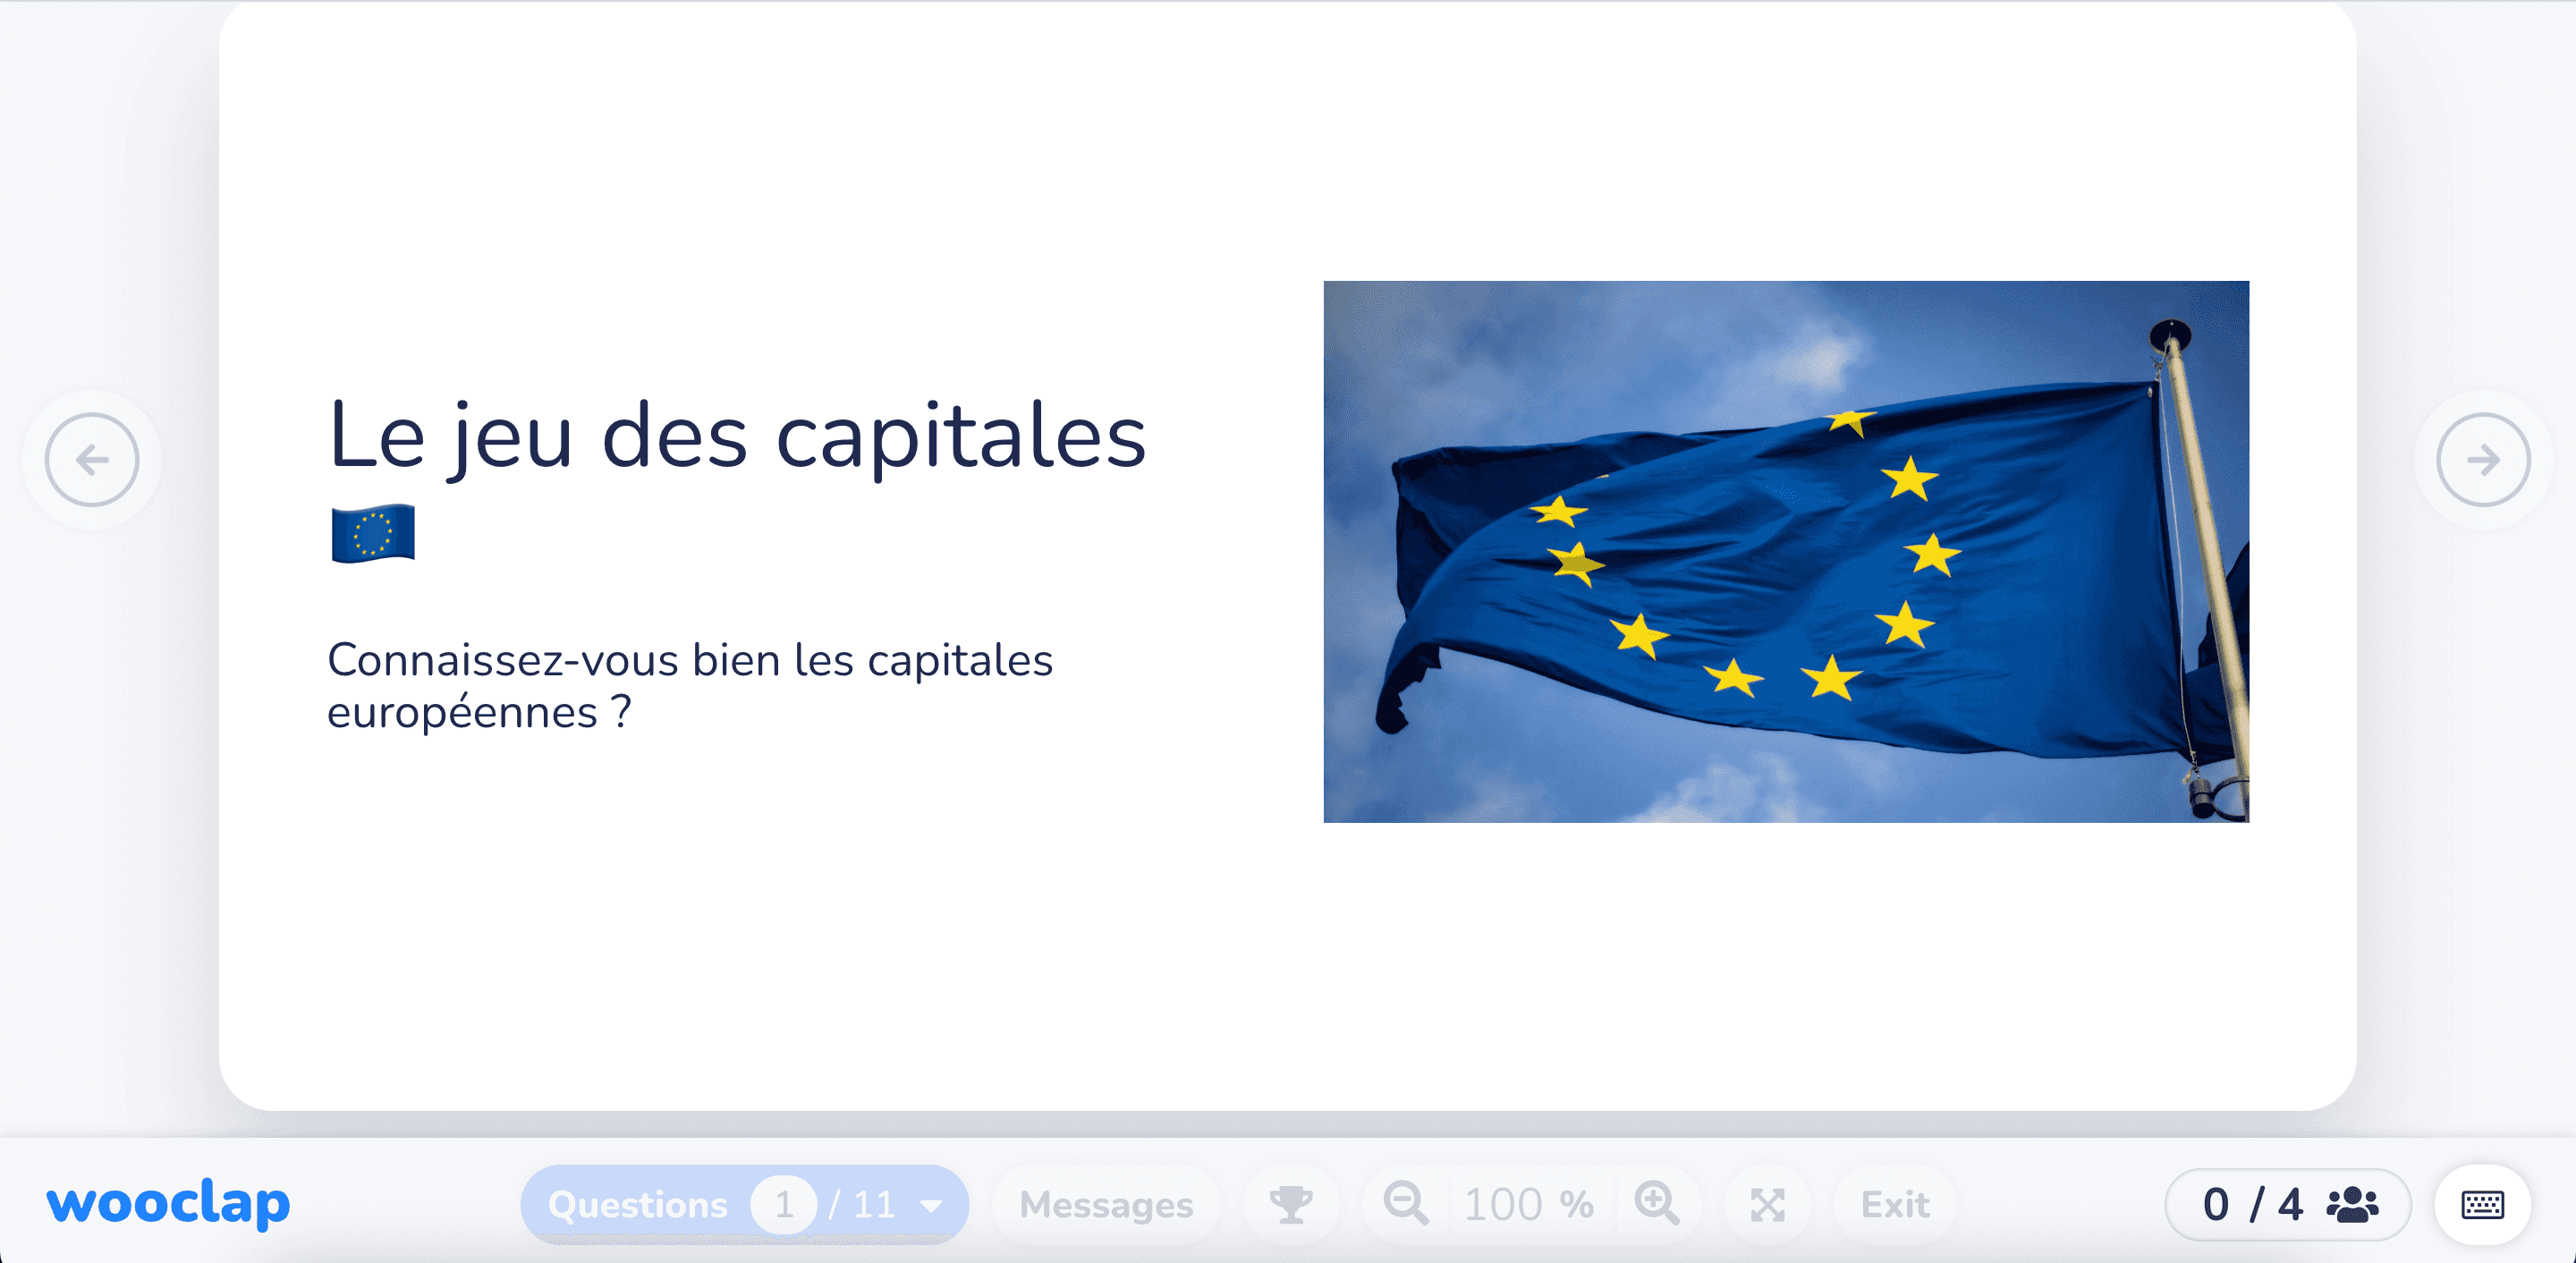 Connaissez-vous bien les capitales européennes ?